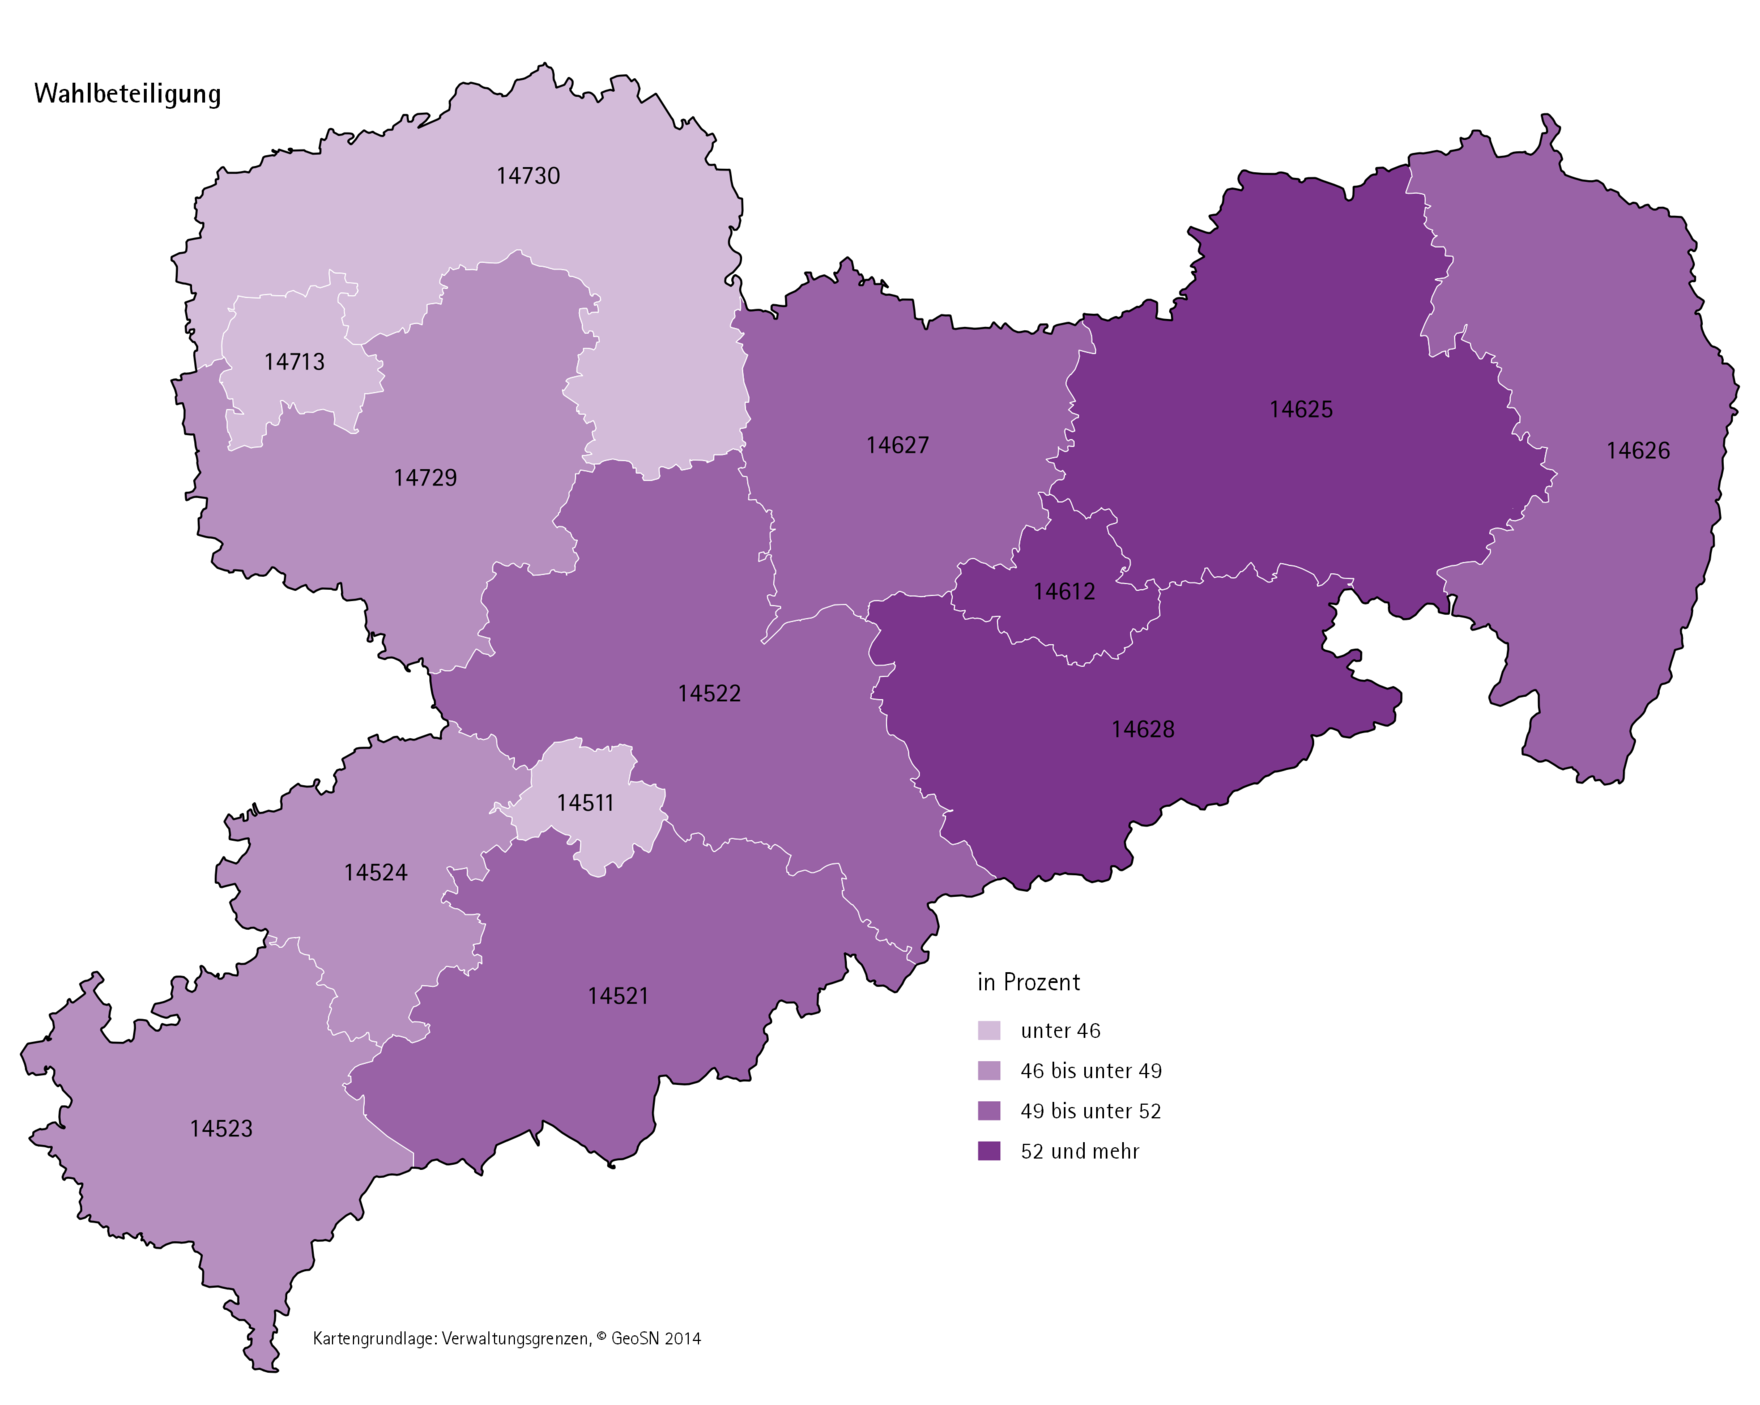 Karthografische Darstellung der Wahlbeteiligung zur Europawahl 2014 nach Landkreisen.